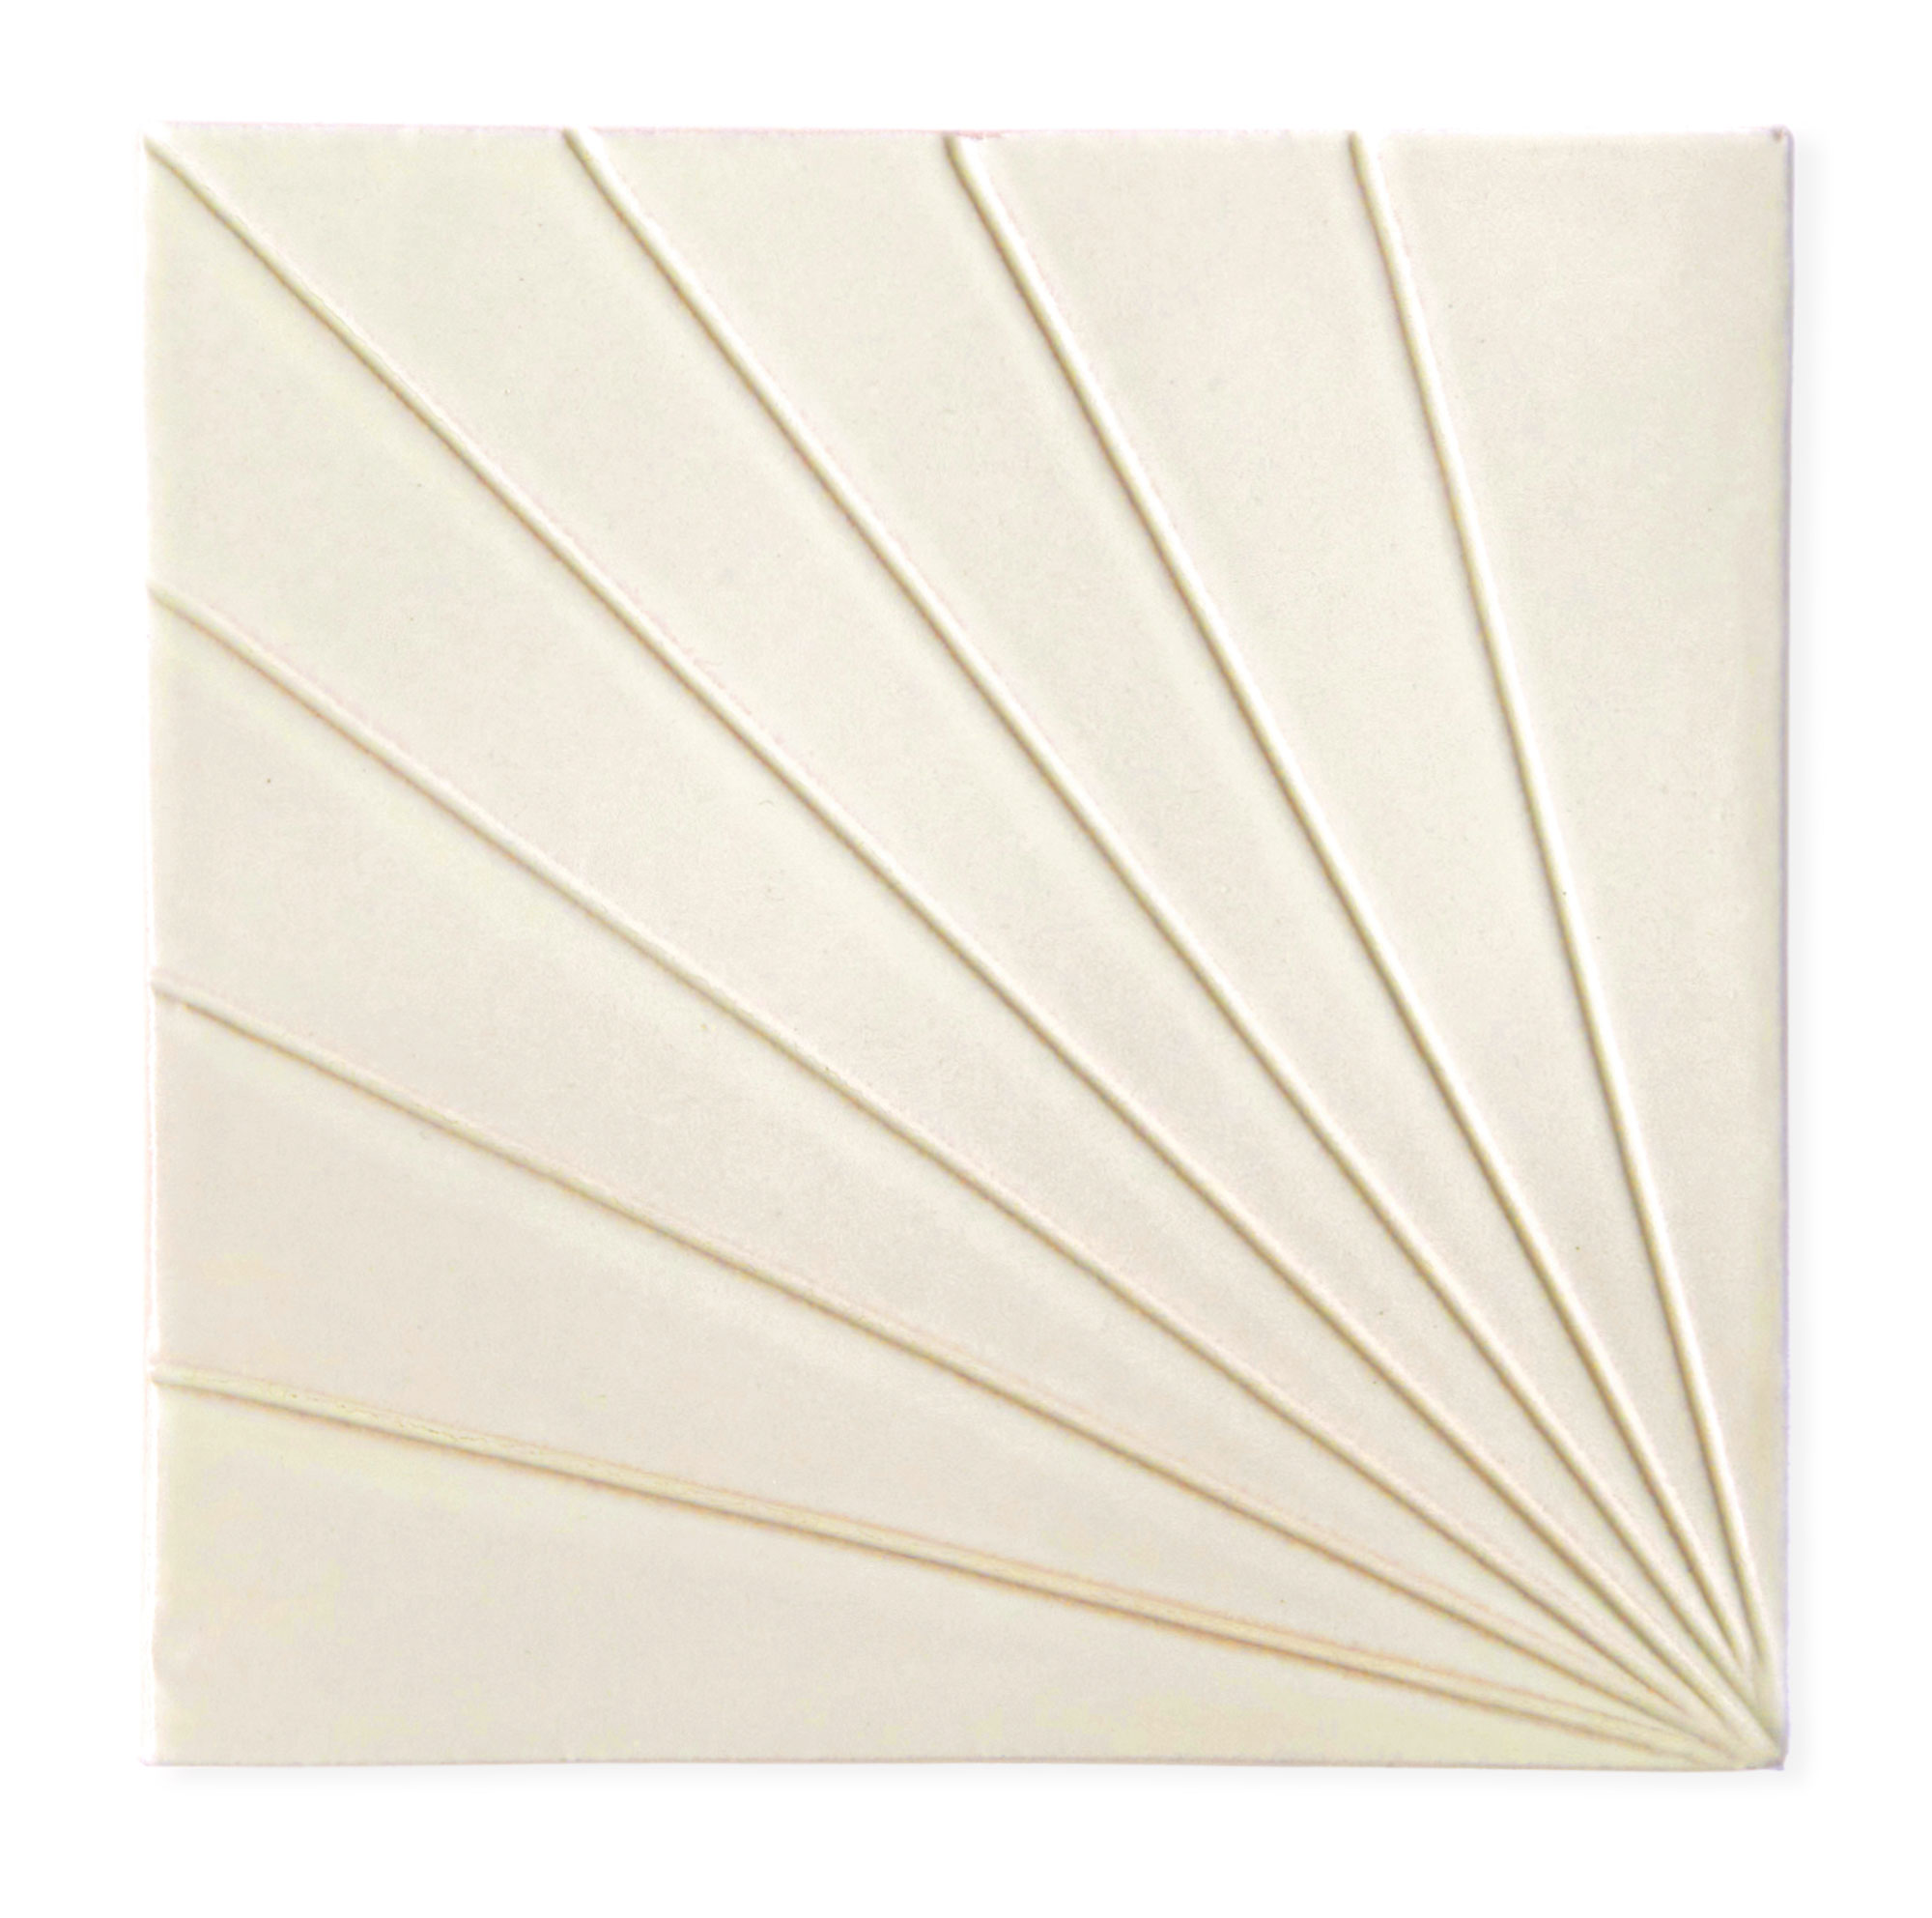 Sample: Tulum Bone 6x6 - Dimensional Relief Artisan Ceramic Tile